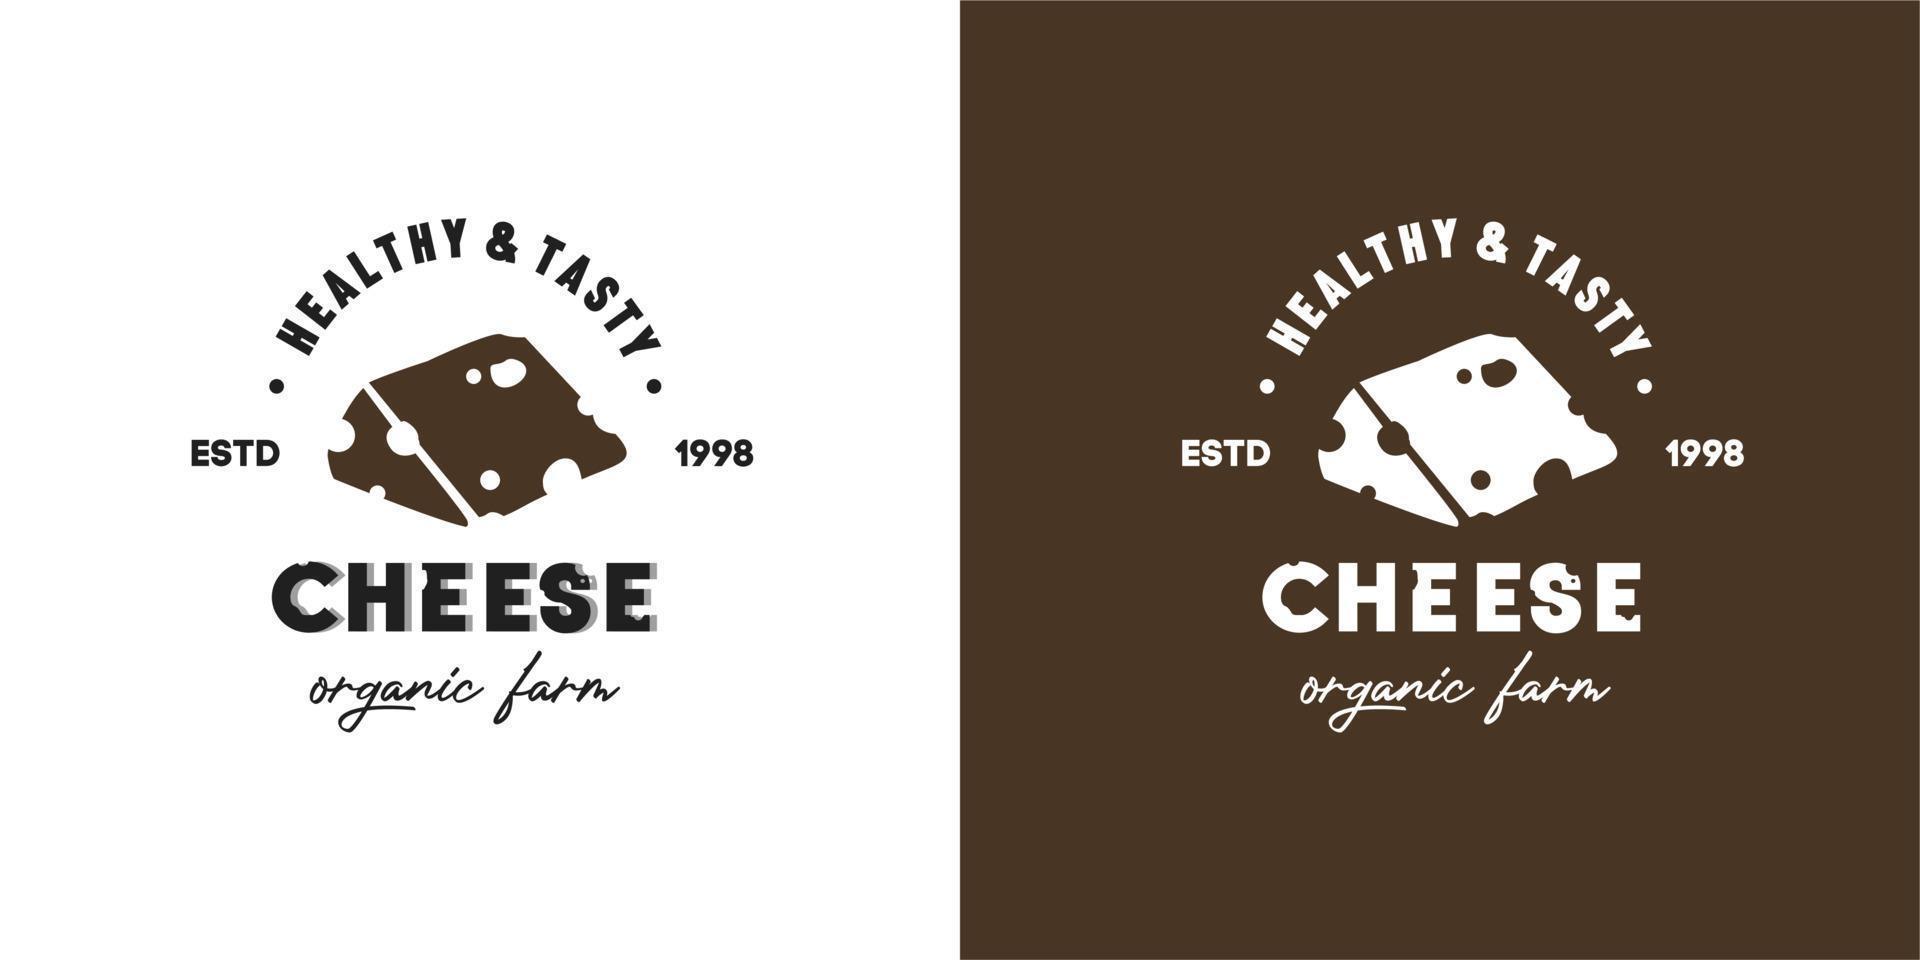 illustratie vectorafbeelding van segment gesneden Tom Jerry Emmentaler kaas met het gat gebruikt voor kaasfabriek, winkel of industrie logo gezondheid lekker van biologische koemelk boerderij. parmezaan, edam, cheddar vector